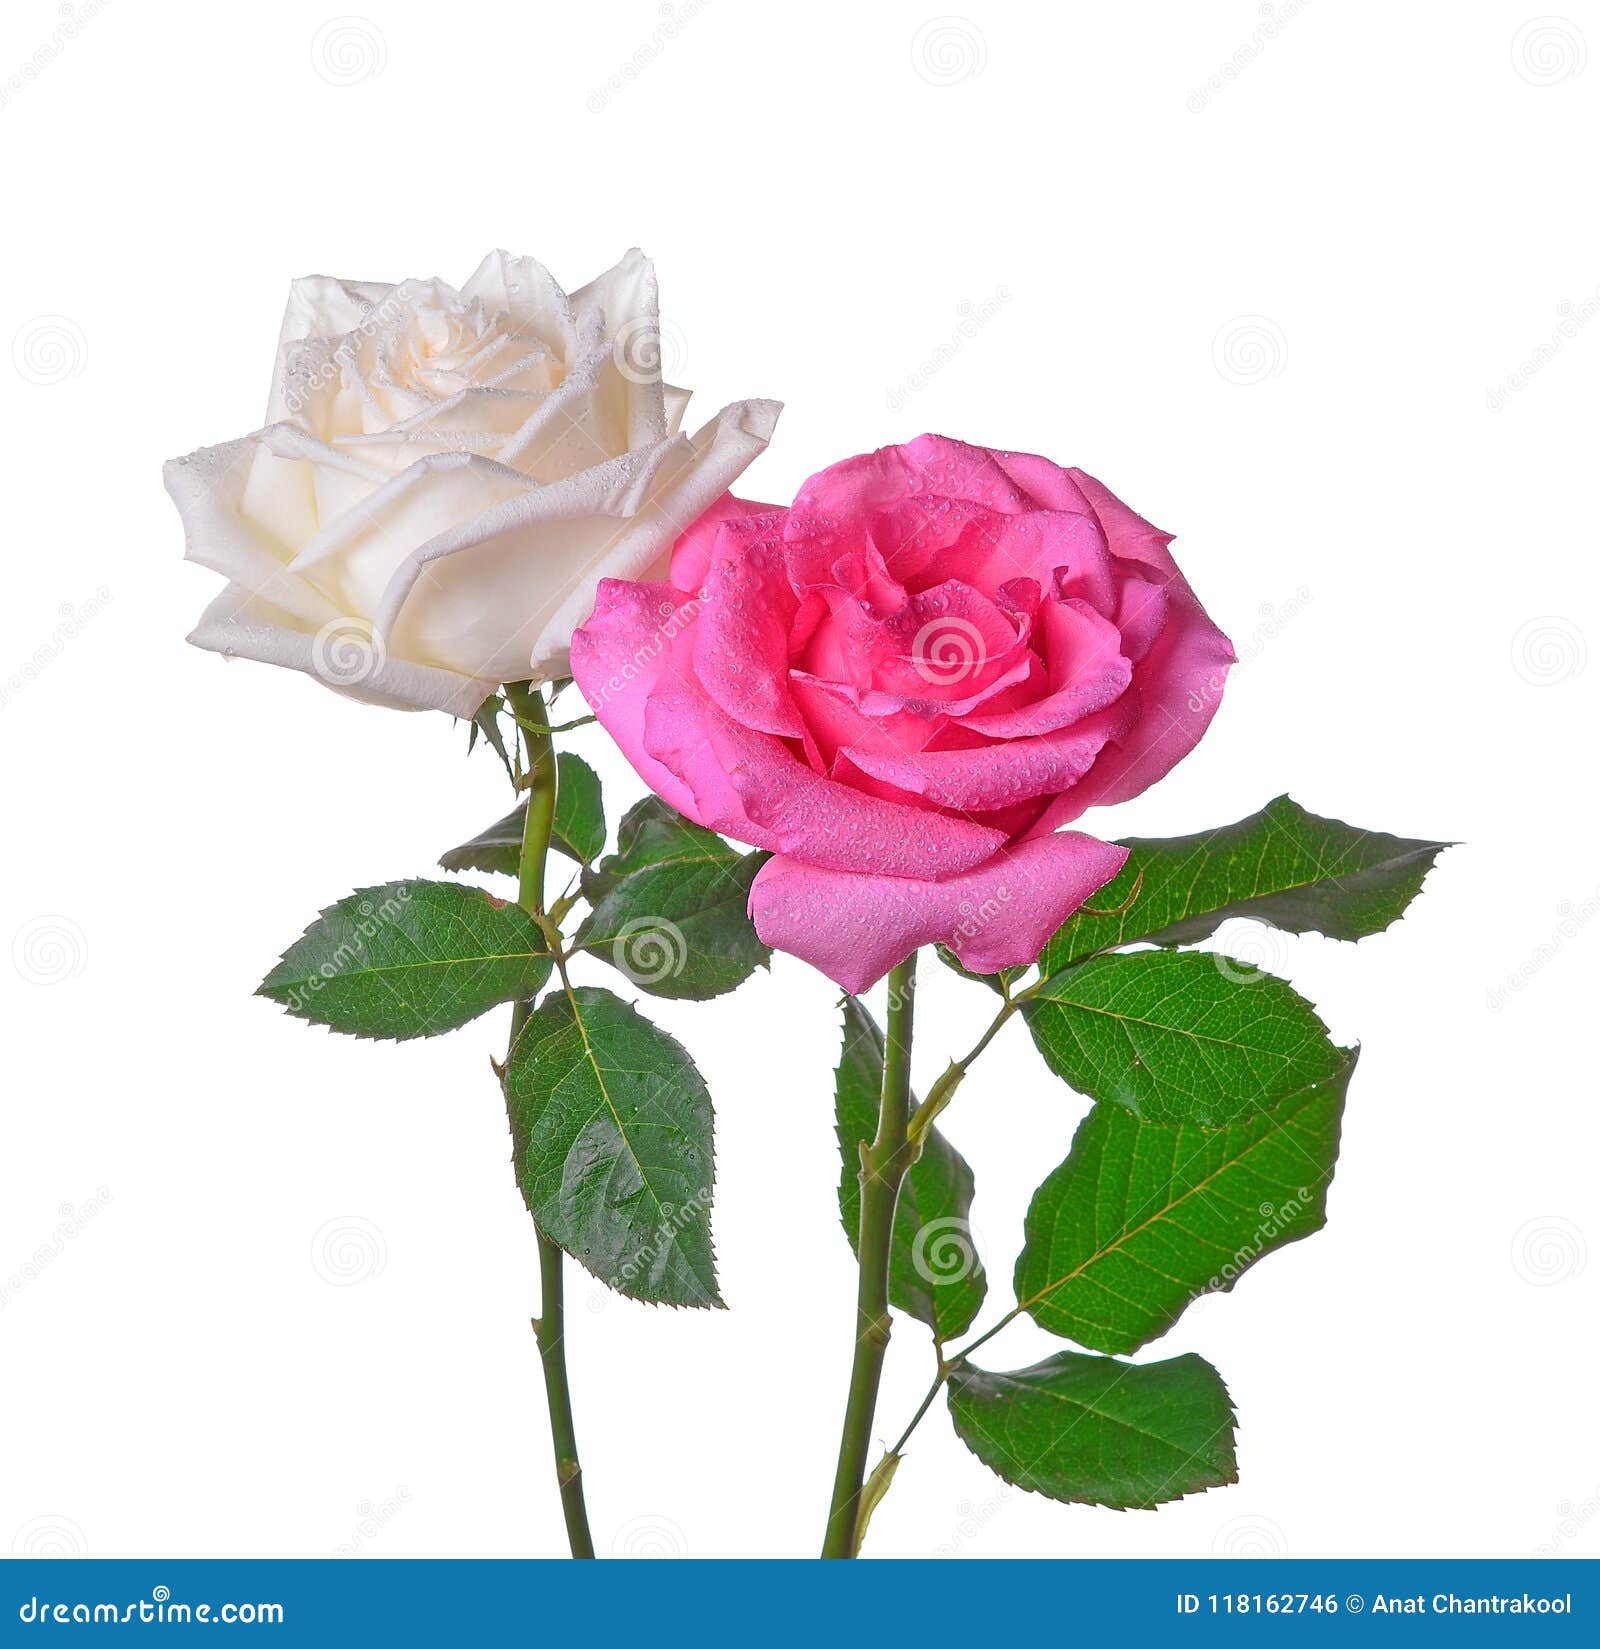 Roses on Isolated White Background Stock Photo - Image of roses, leaf